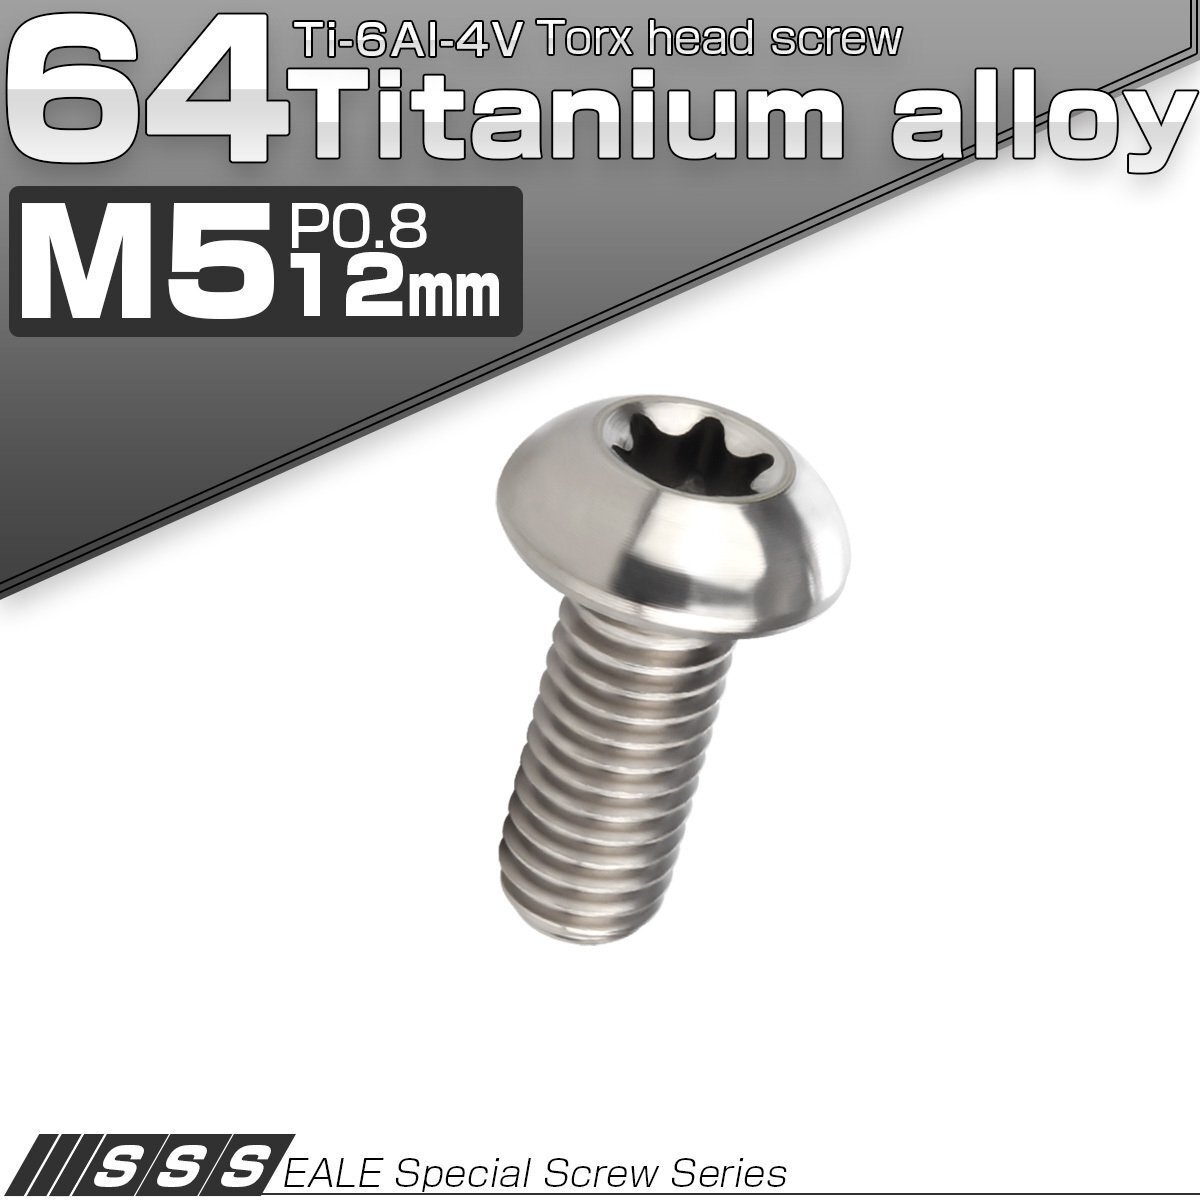 64チタン製 M5 12mm P0.8 トルクス穴付き ボタンボルト シルバー チタン原色 チタンボルト JA463_画像1